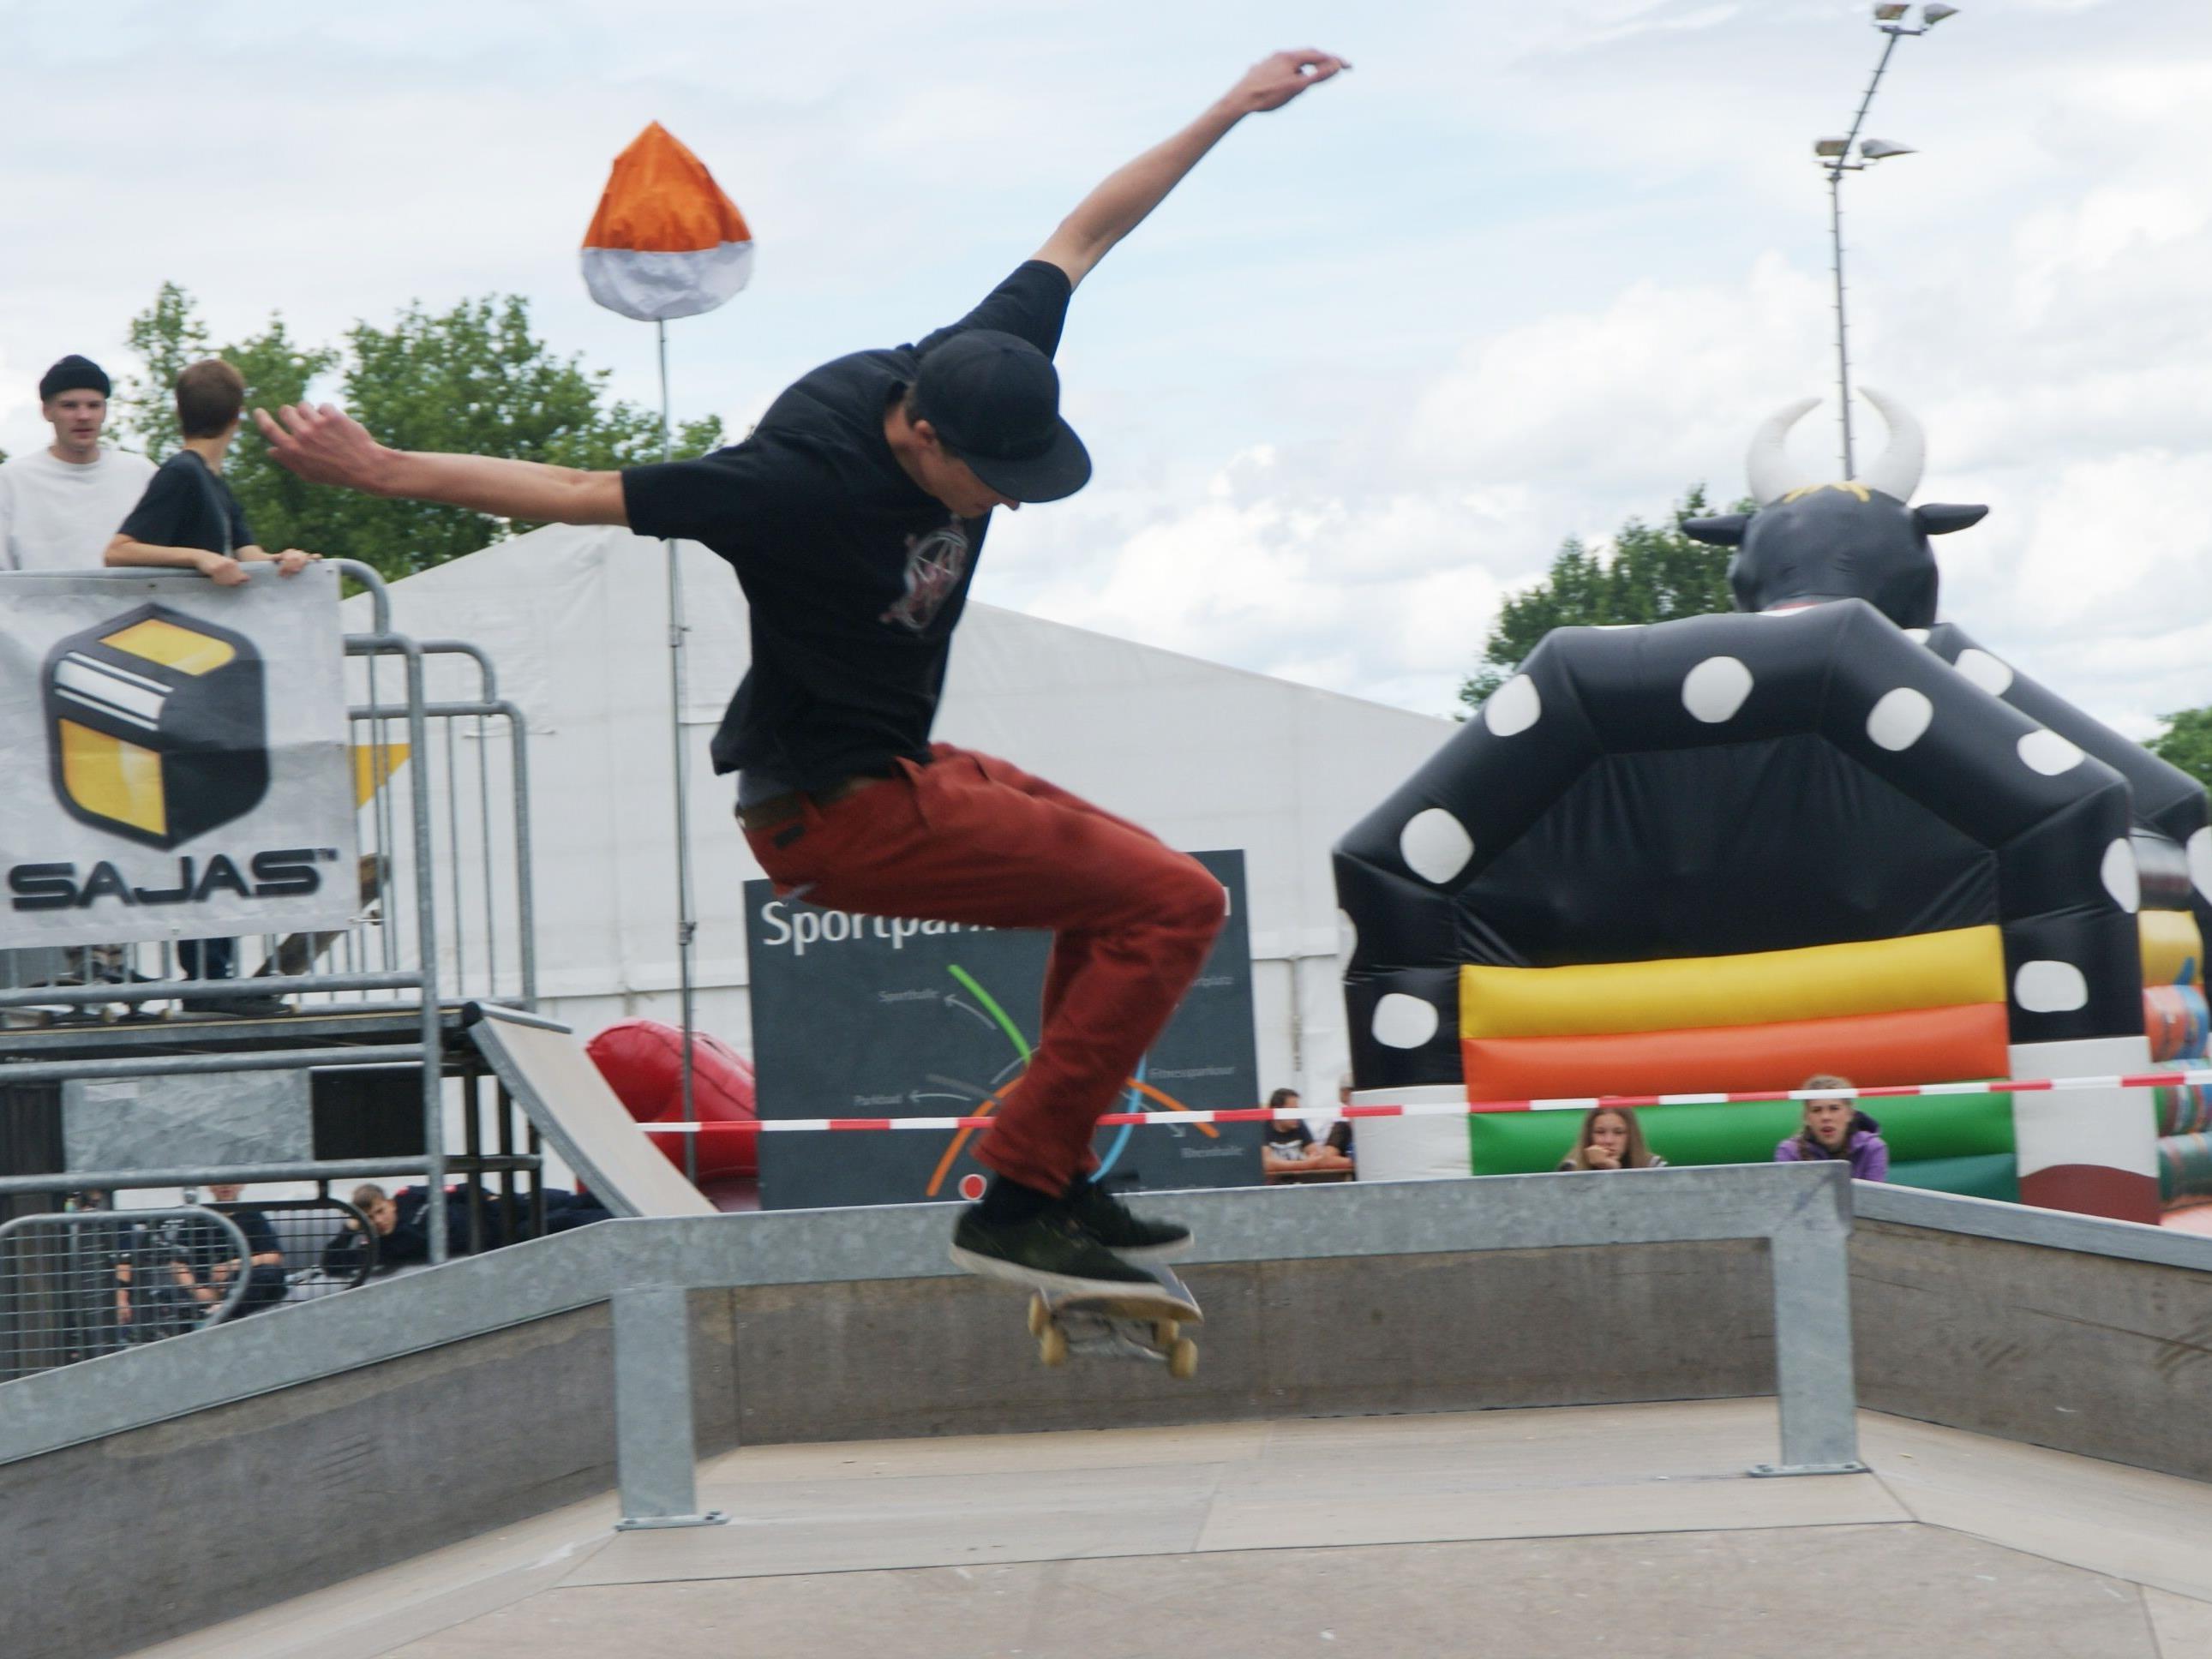 Waghalsige Stunts begeisterten das Publikum beim Skater-Contest